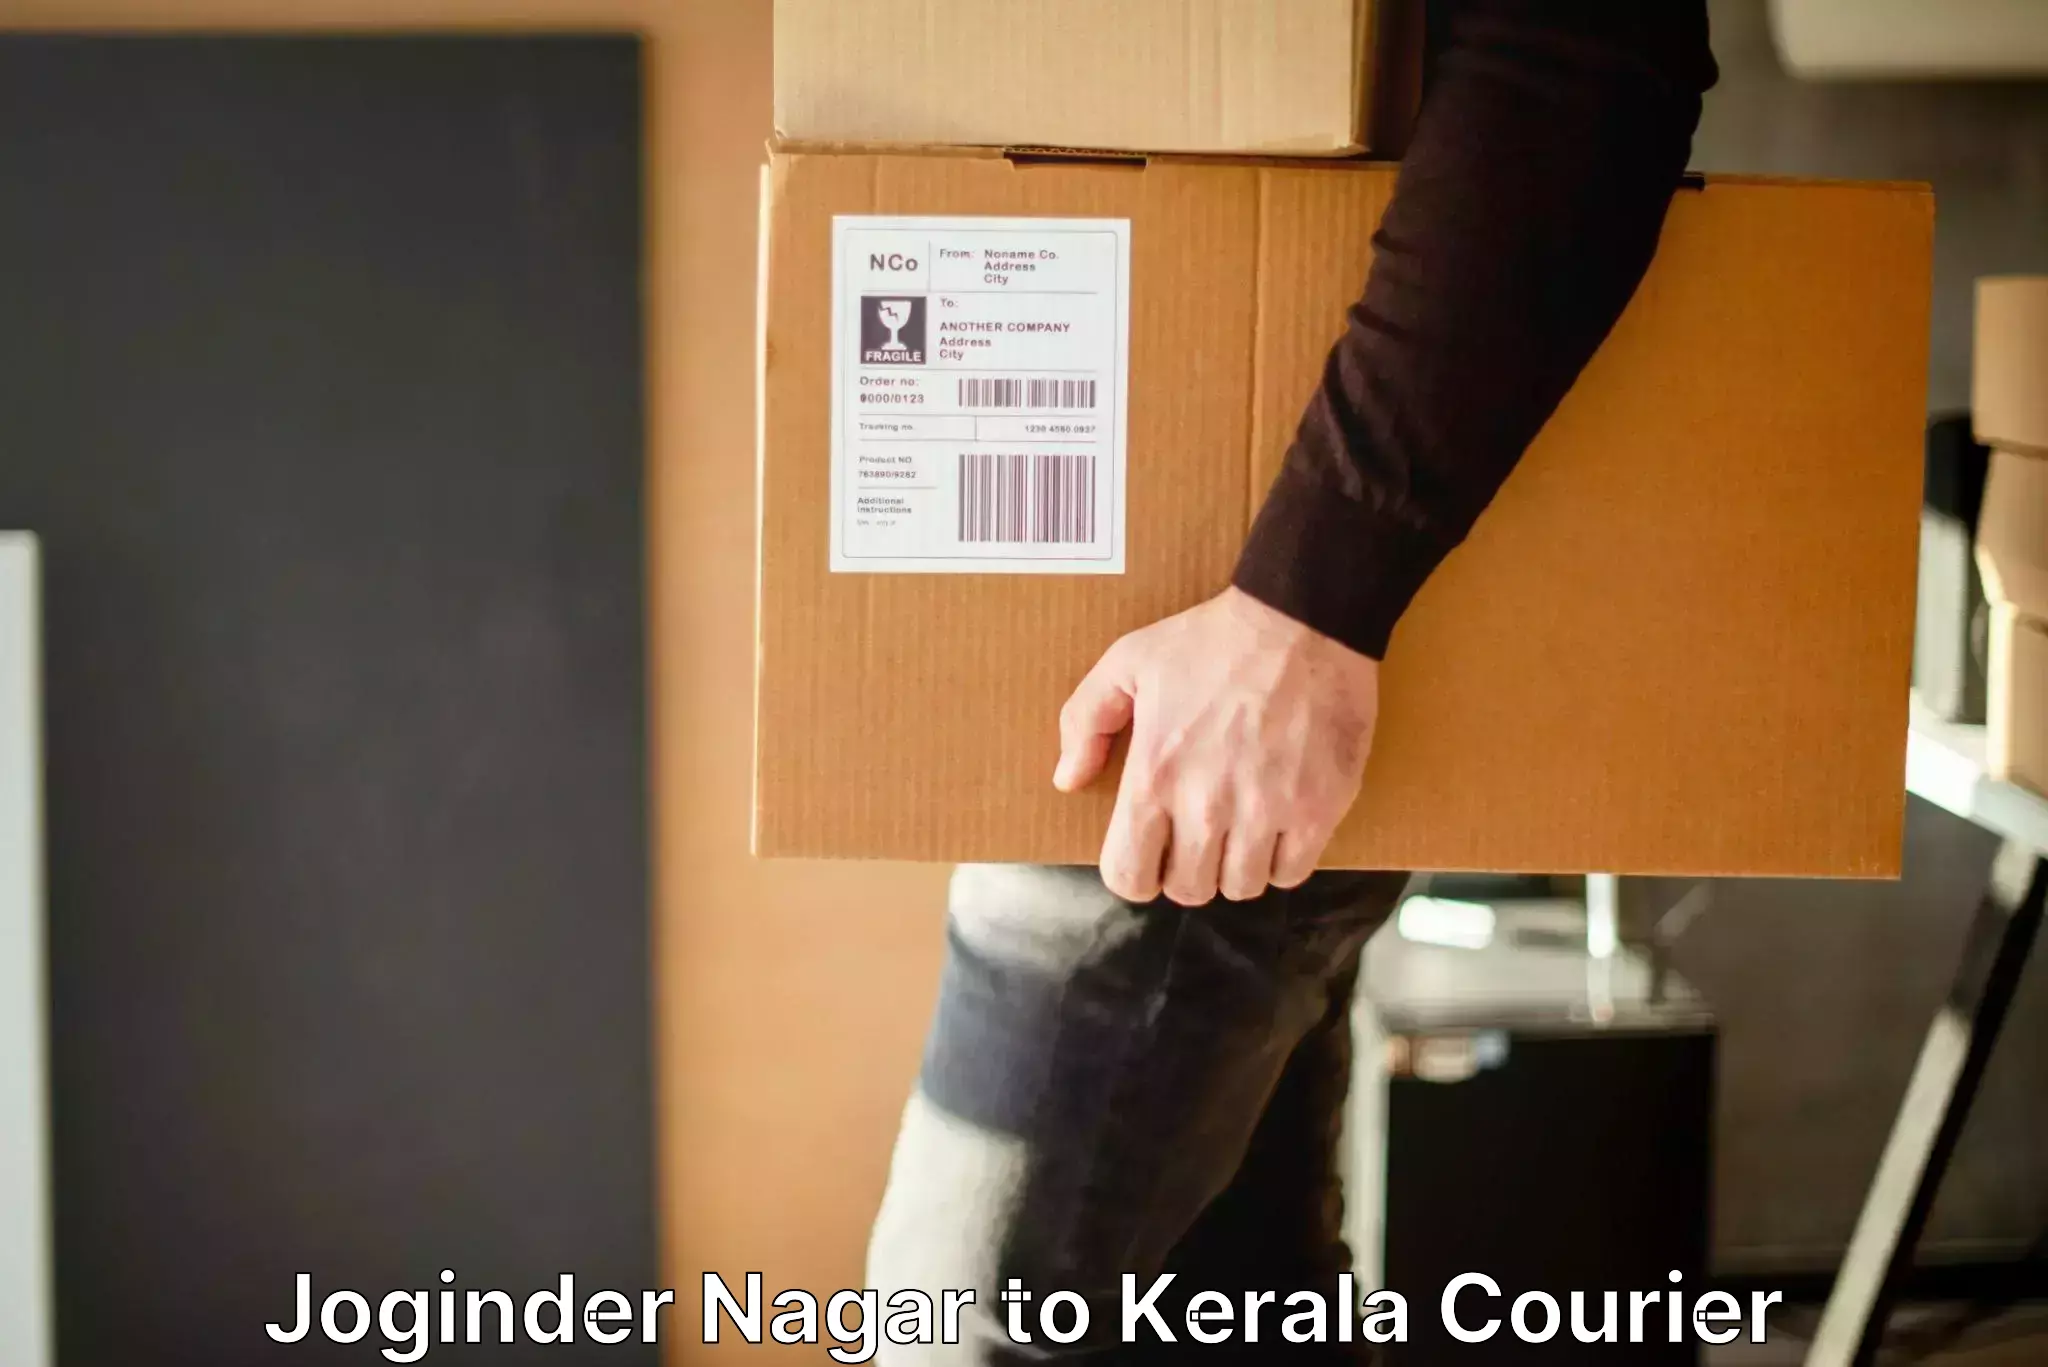 Baggage delivery management Joginder Nagar to Kerala